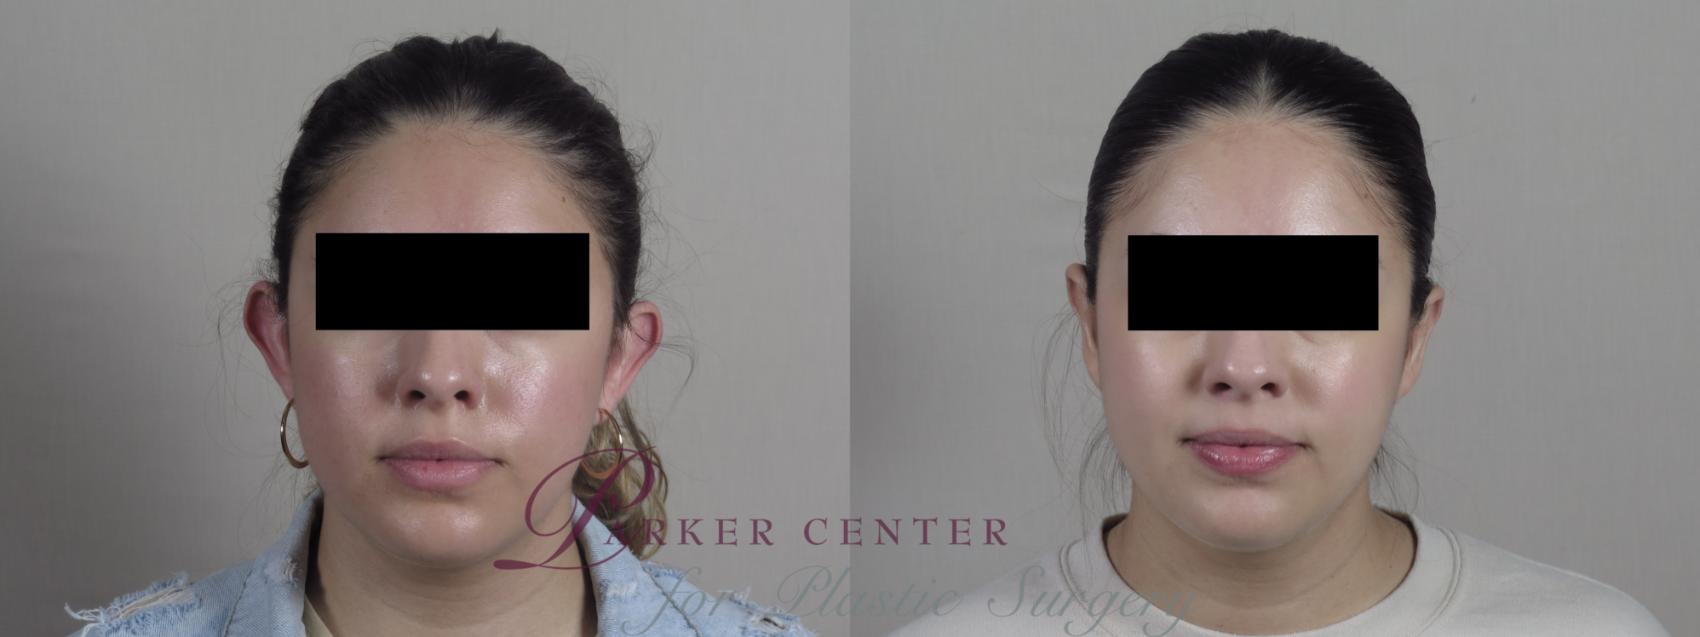 Ear Surgery Case 1269 Before & After Front | Paramus, NJ | Parker Center for Plastic Surgery